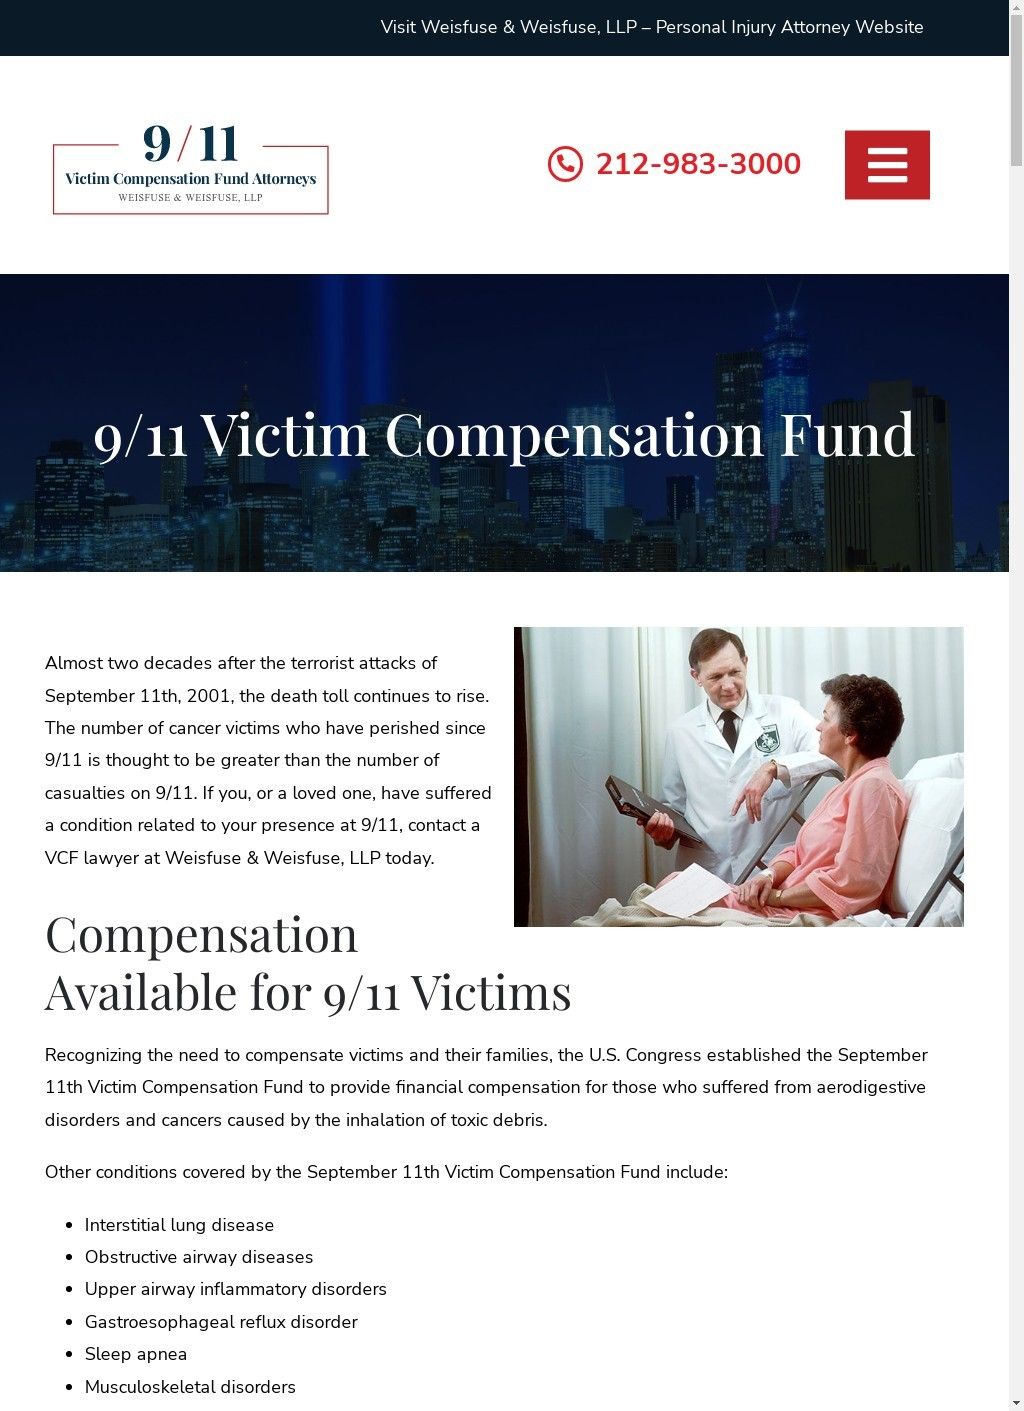 9/11 Victim Compensation Fund